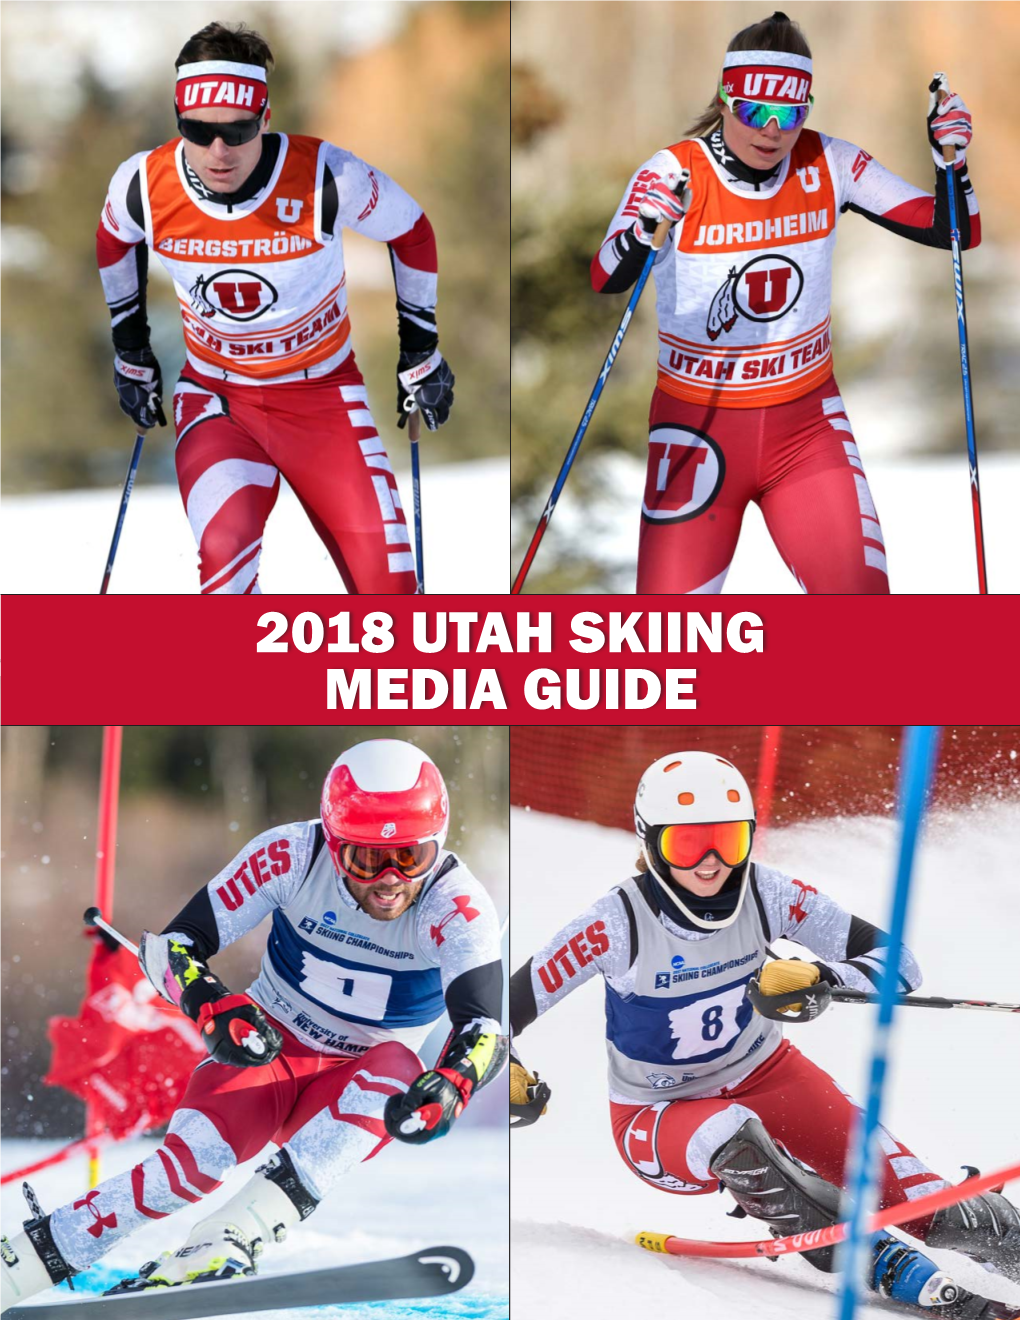 2018 UTAH SKIING MEDIA GUIDE Spence Eccles Ski Team Building